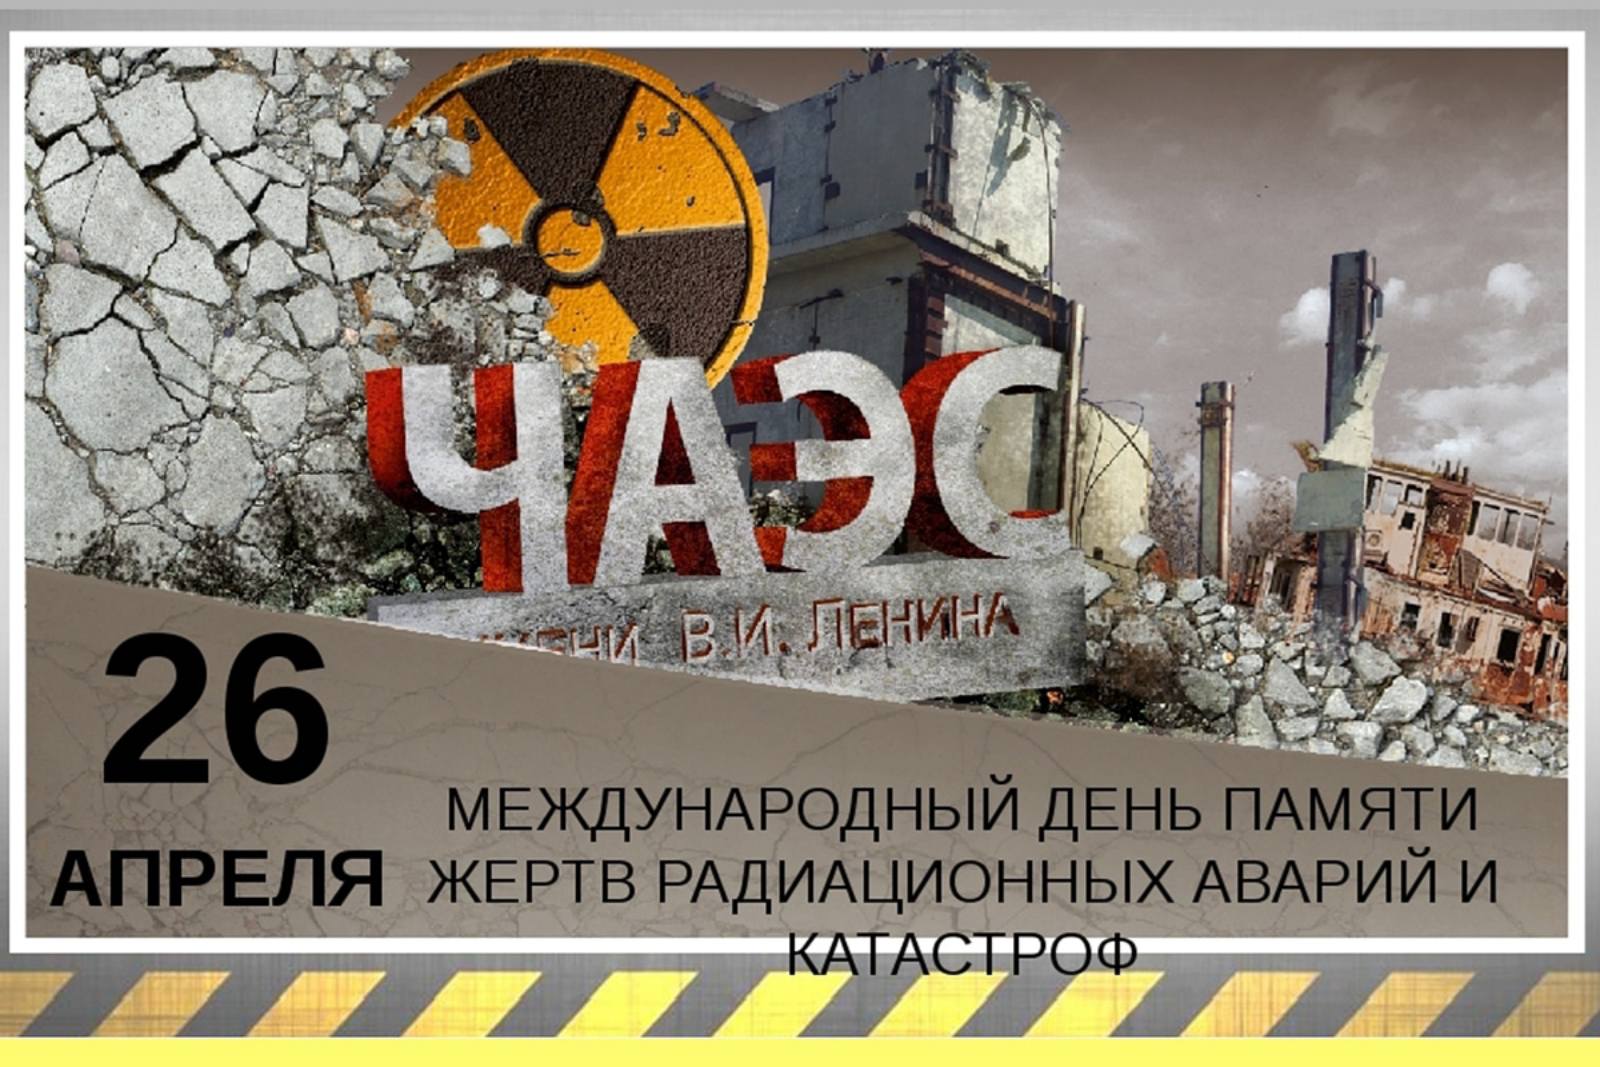 Изменения с 26 апреля. Международный день памяти о Чернобыльской аварии-26 апреля. День памяти ликвидации аварии на ЧАЭС (Чернобыль). 26 Апреля 1986 день памяти погибших в радиационных авариях и катастрофах. 26 Апреля Международный день памяти о Чернобыльской катастрофе.